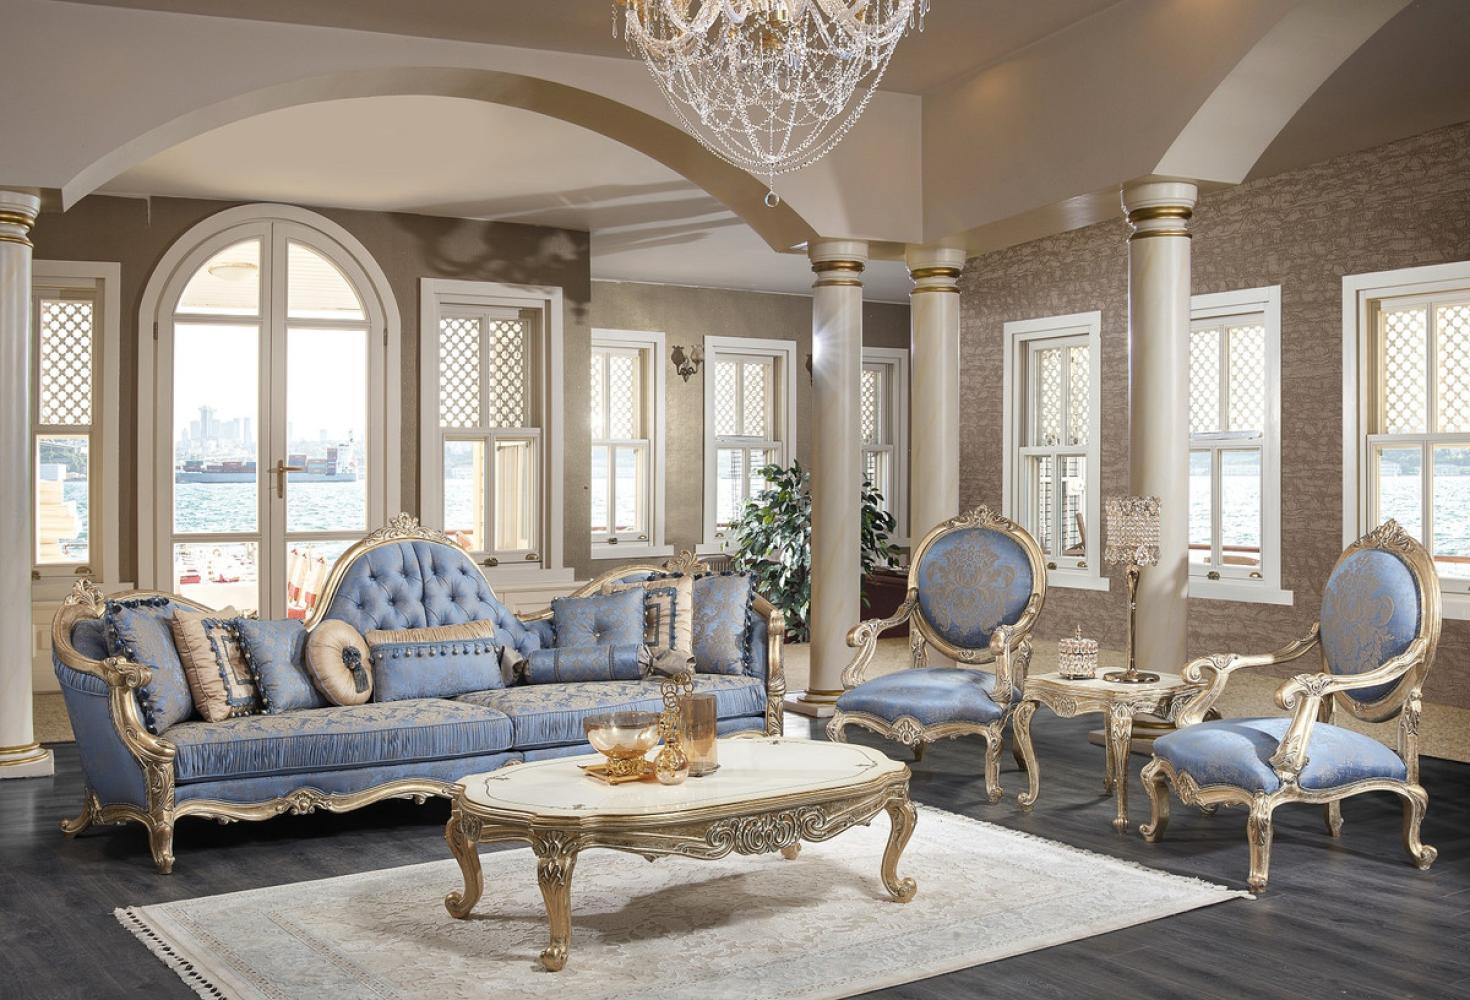 Casa Padrino Luxus Barock Wohnzimmer Set - 1 Chesterfield Sofa & 1 Couchtisch & 2 Salon Stühle & 1 Beistelltisch - Barock Wohnzimmermöbel Bild 1